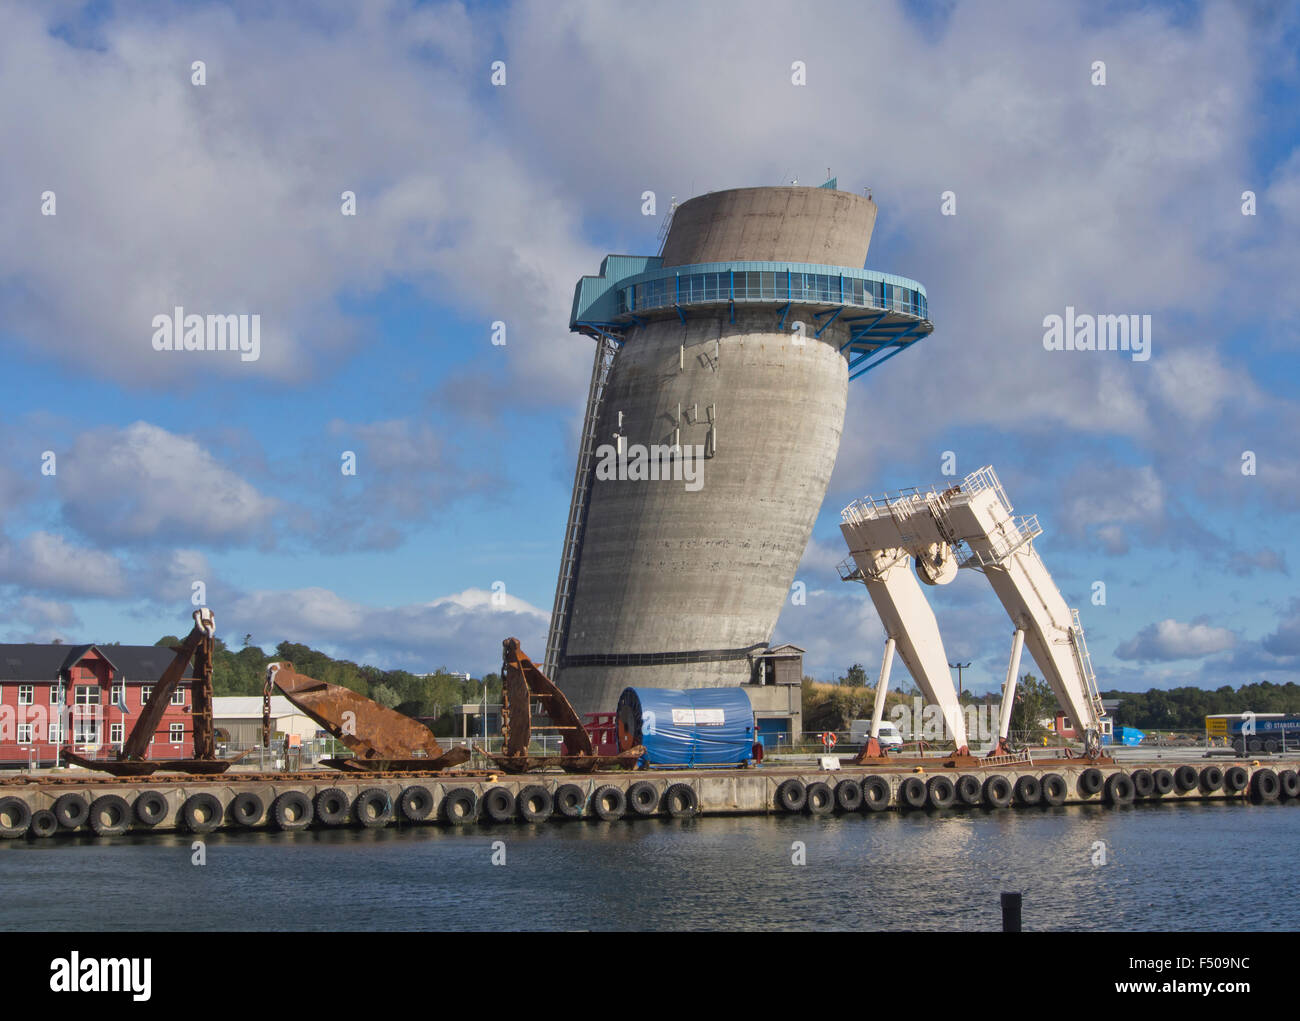 Jattavagen, Stavanger en Norvège, ancienne zone industrielle, la tour penchée, faite pour tester l'échafaudage voile de béton pour l'industrie de l'huile Banque D'Images